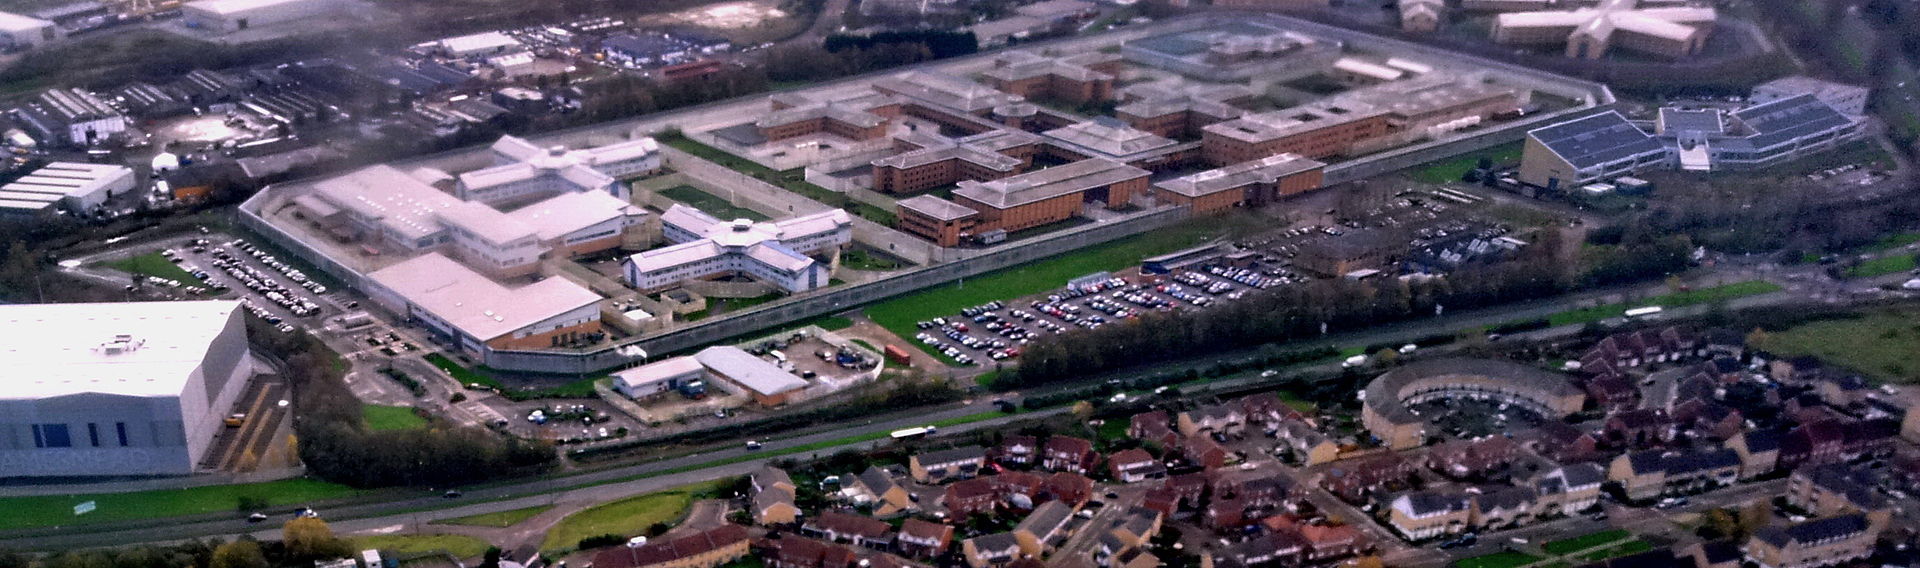 london_belmarsh_prison_aerial_view.jpg